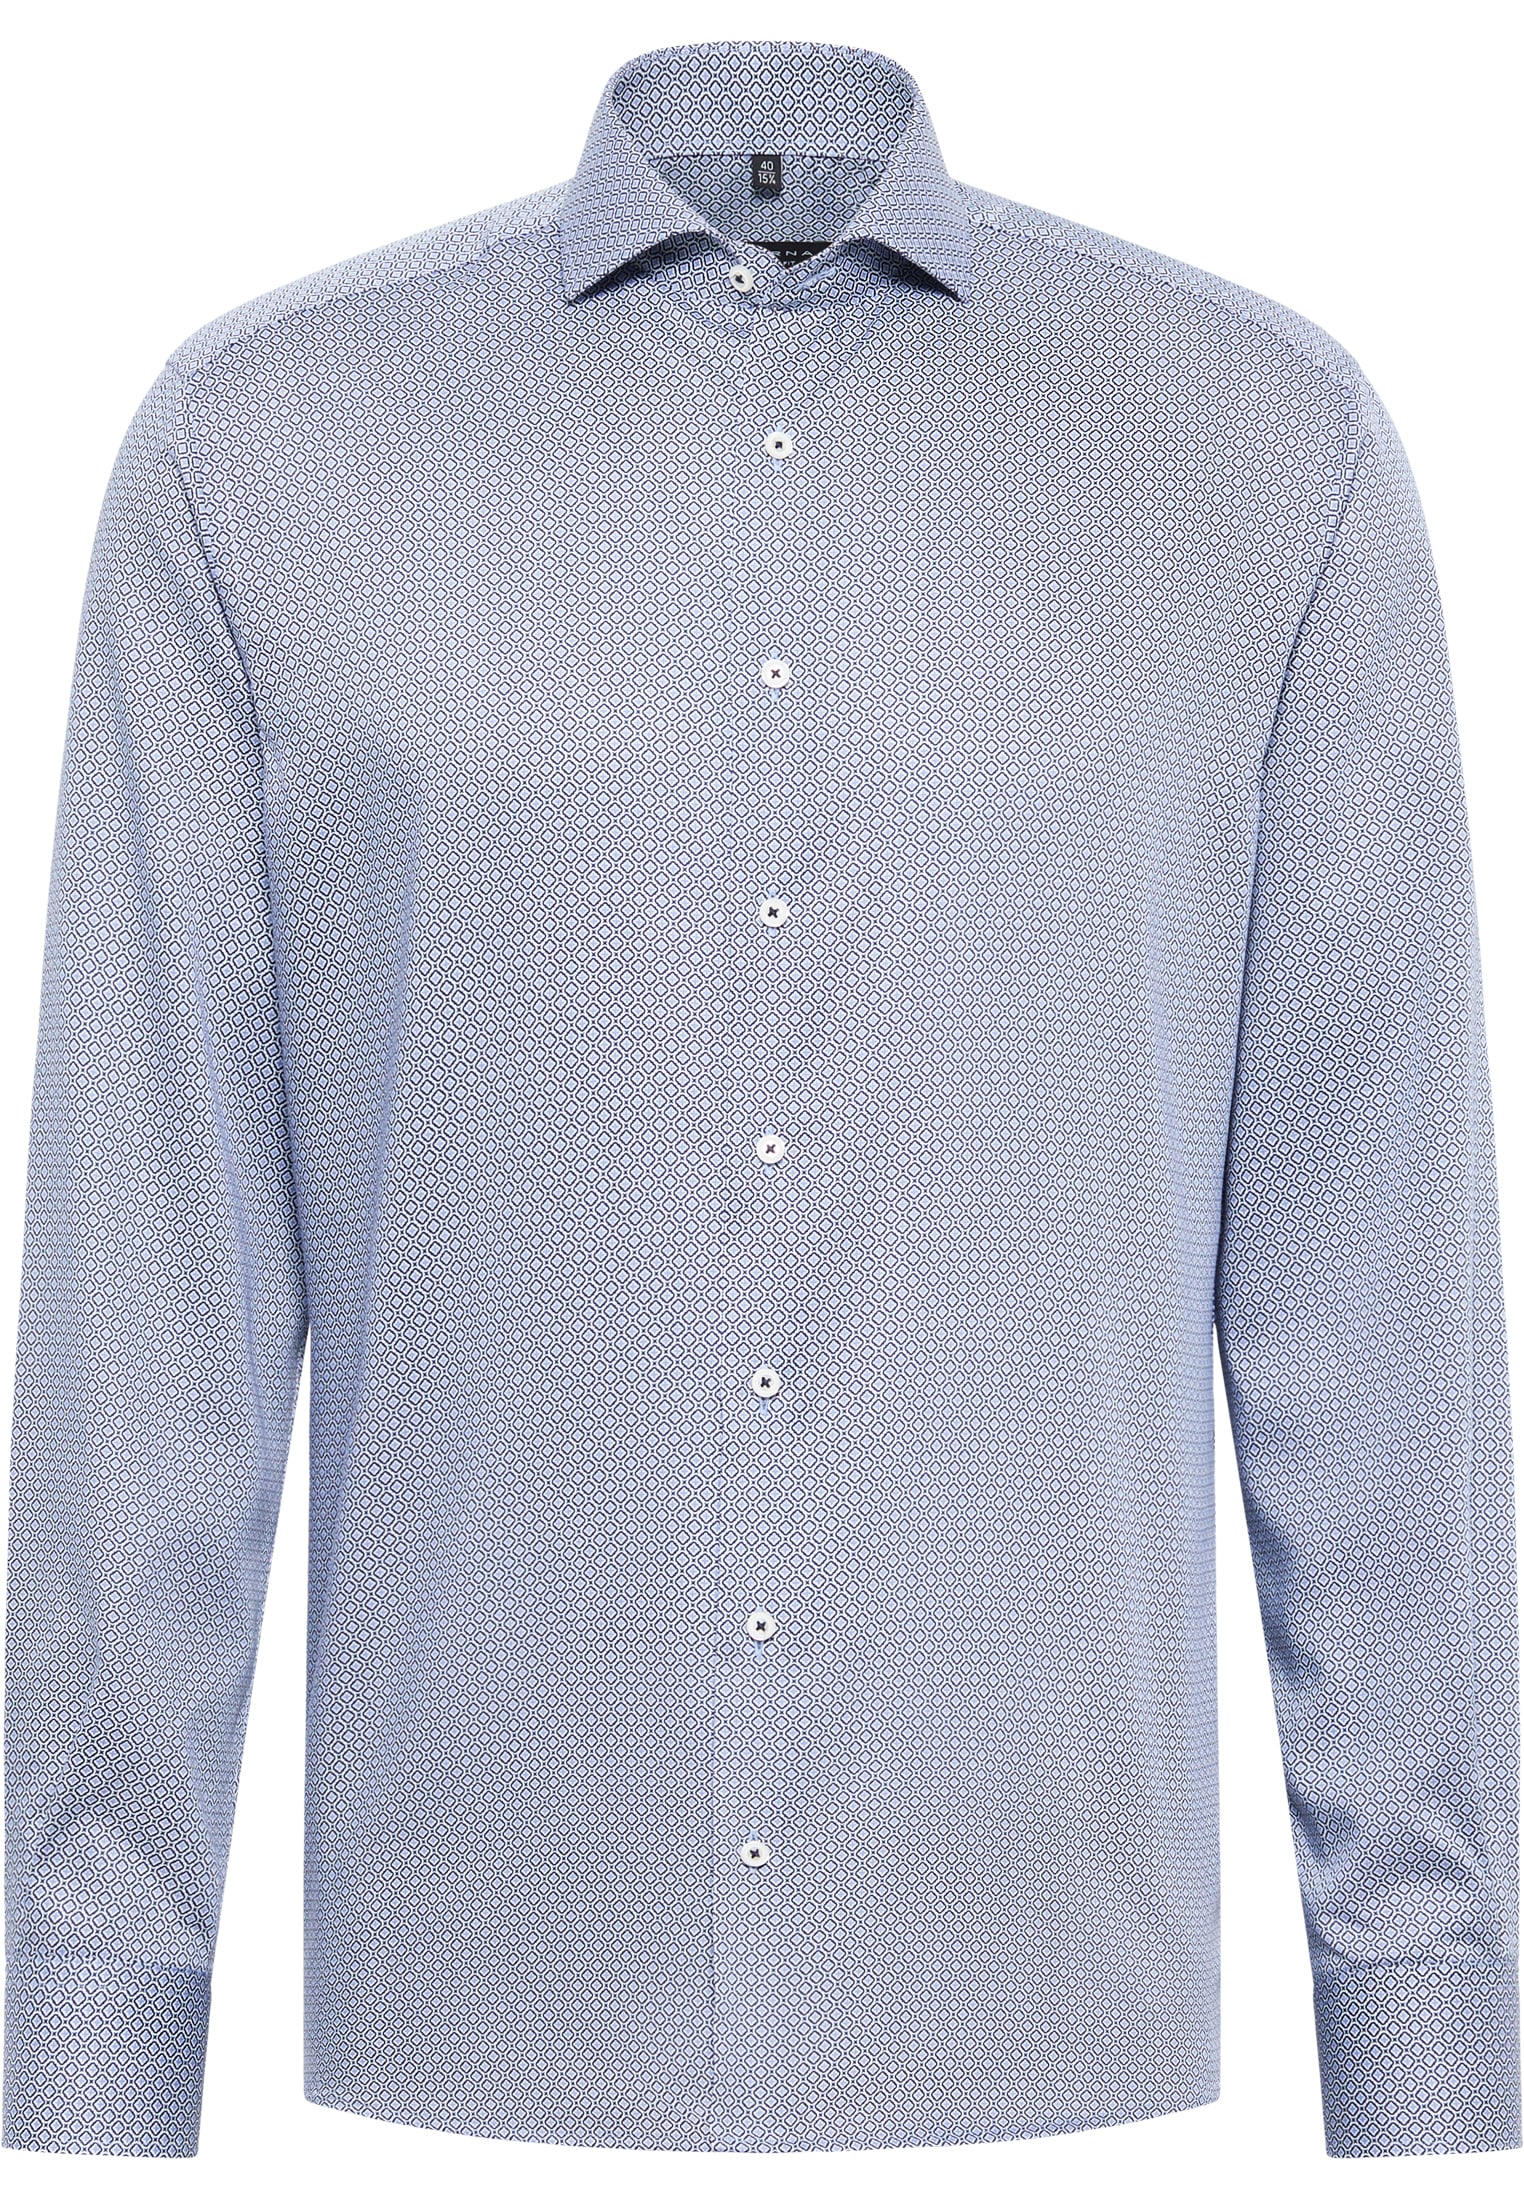 MODERN FIT Overhemd in blauw/lichtblauw gedrukt